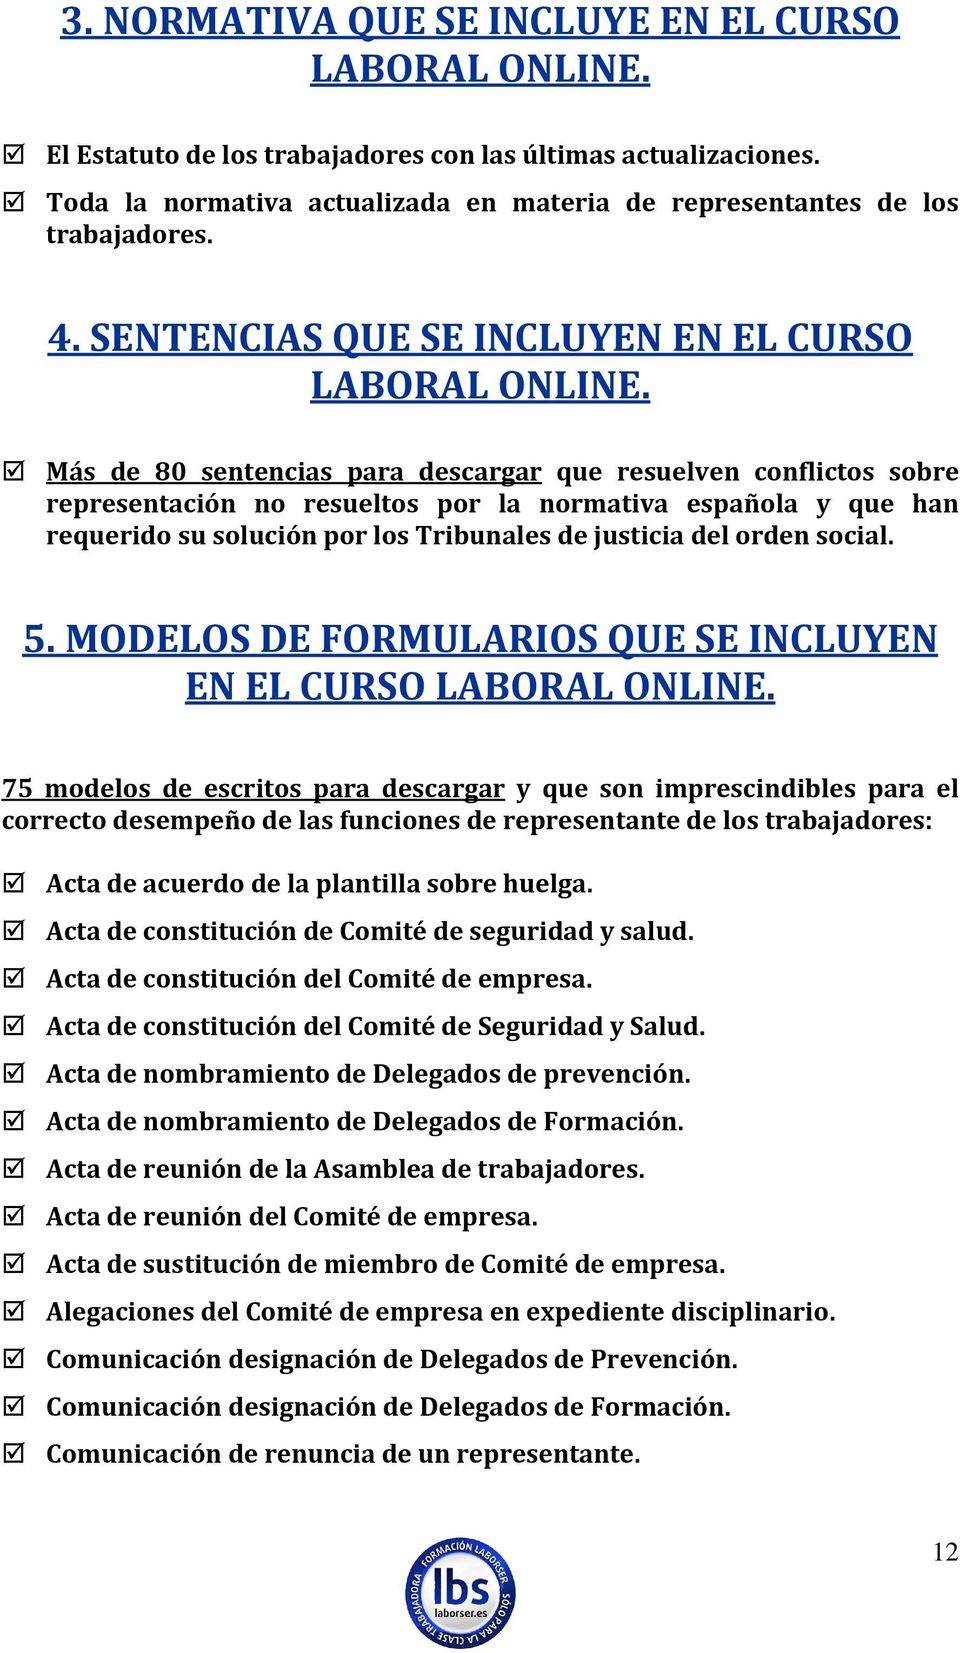 Más de 80 sentencias para descargar que resuelven conflictos sobre representación no resueltos por la normativa española y que han requerido su solución por los Tribunales de justicia del orden